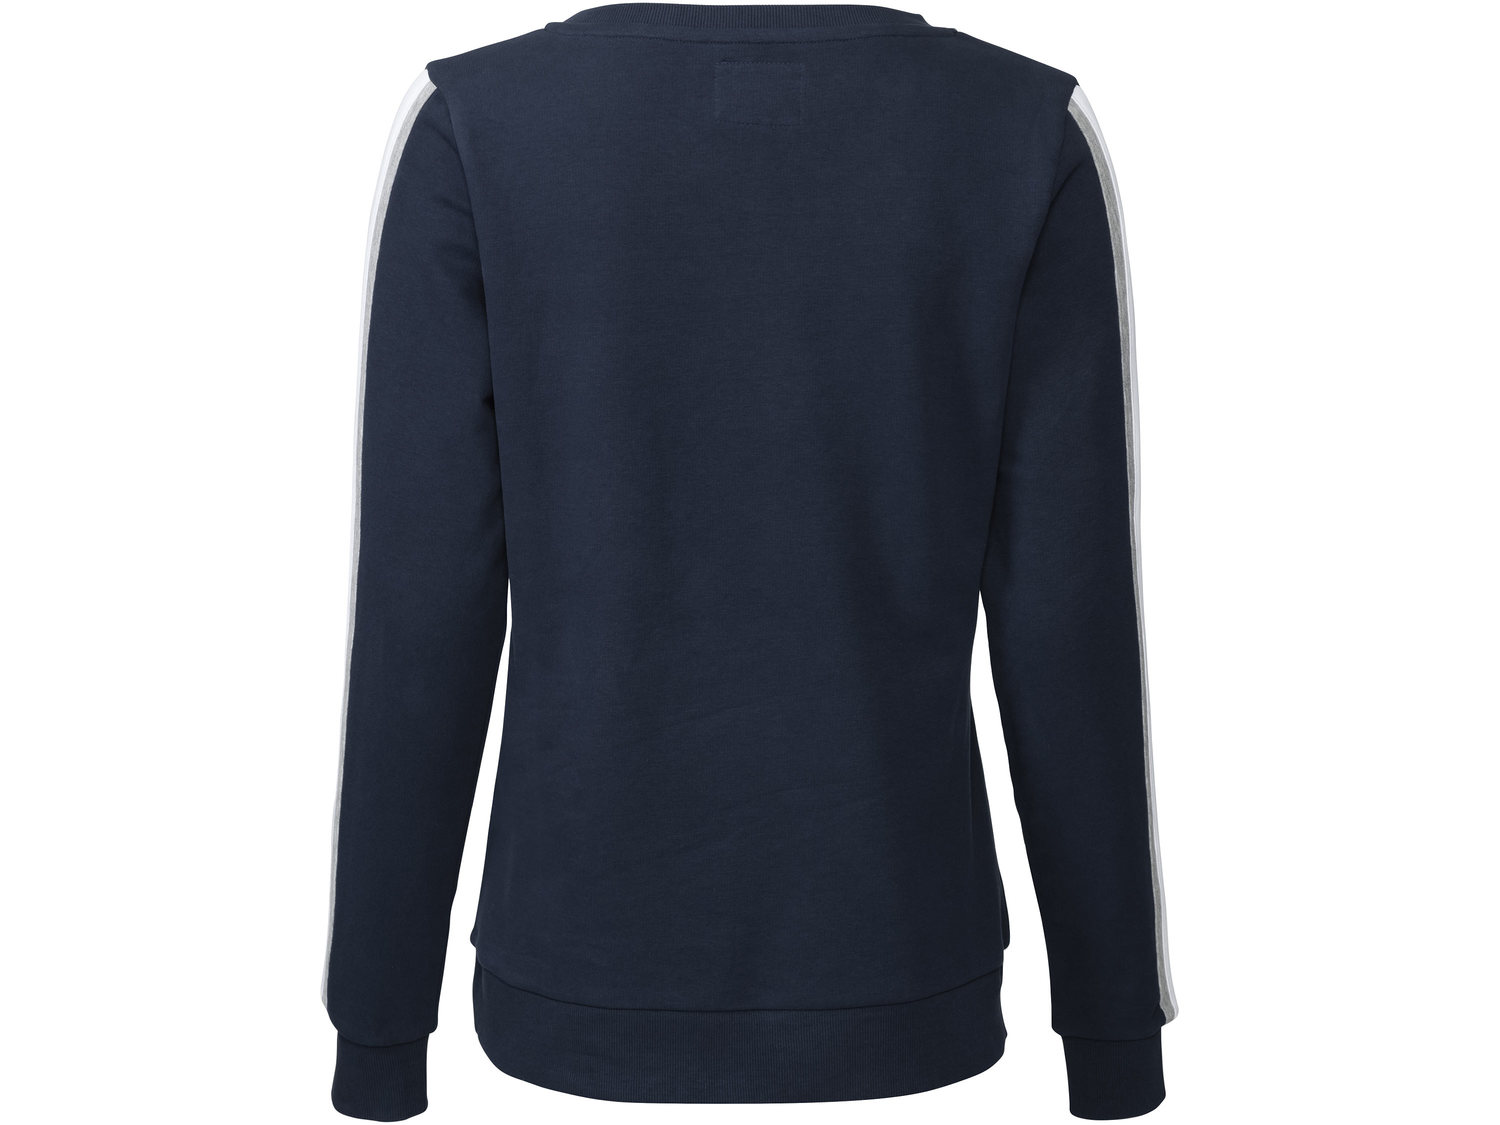 Bluza Esmara, cena 39,99 PLN 
- rozmiary: XS-L
- ściągacze przy rękawach
- ...